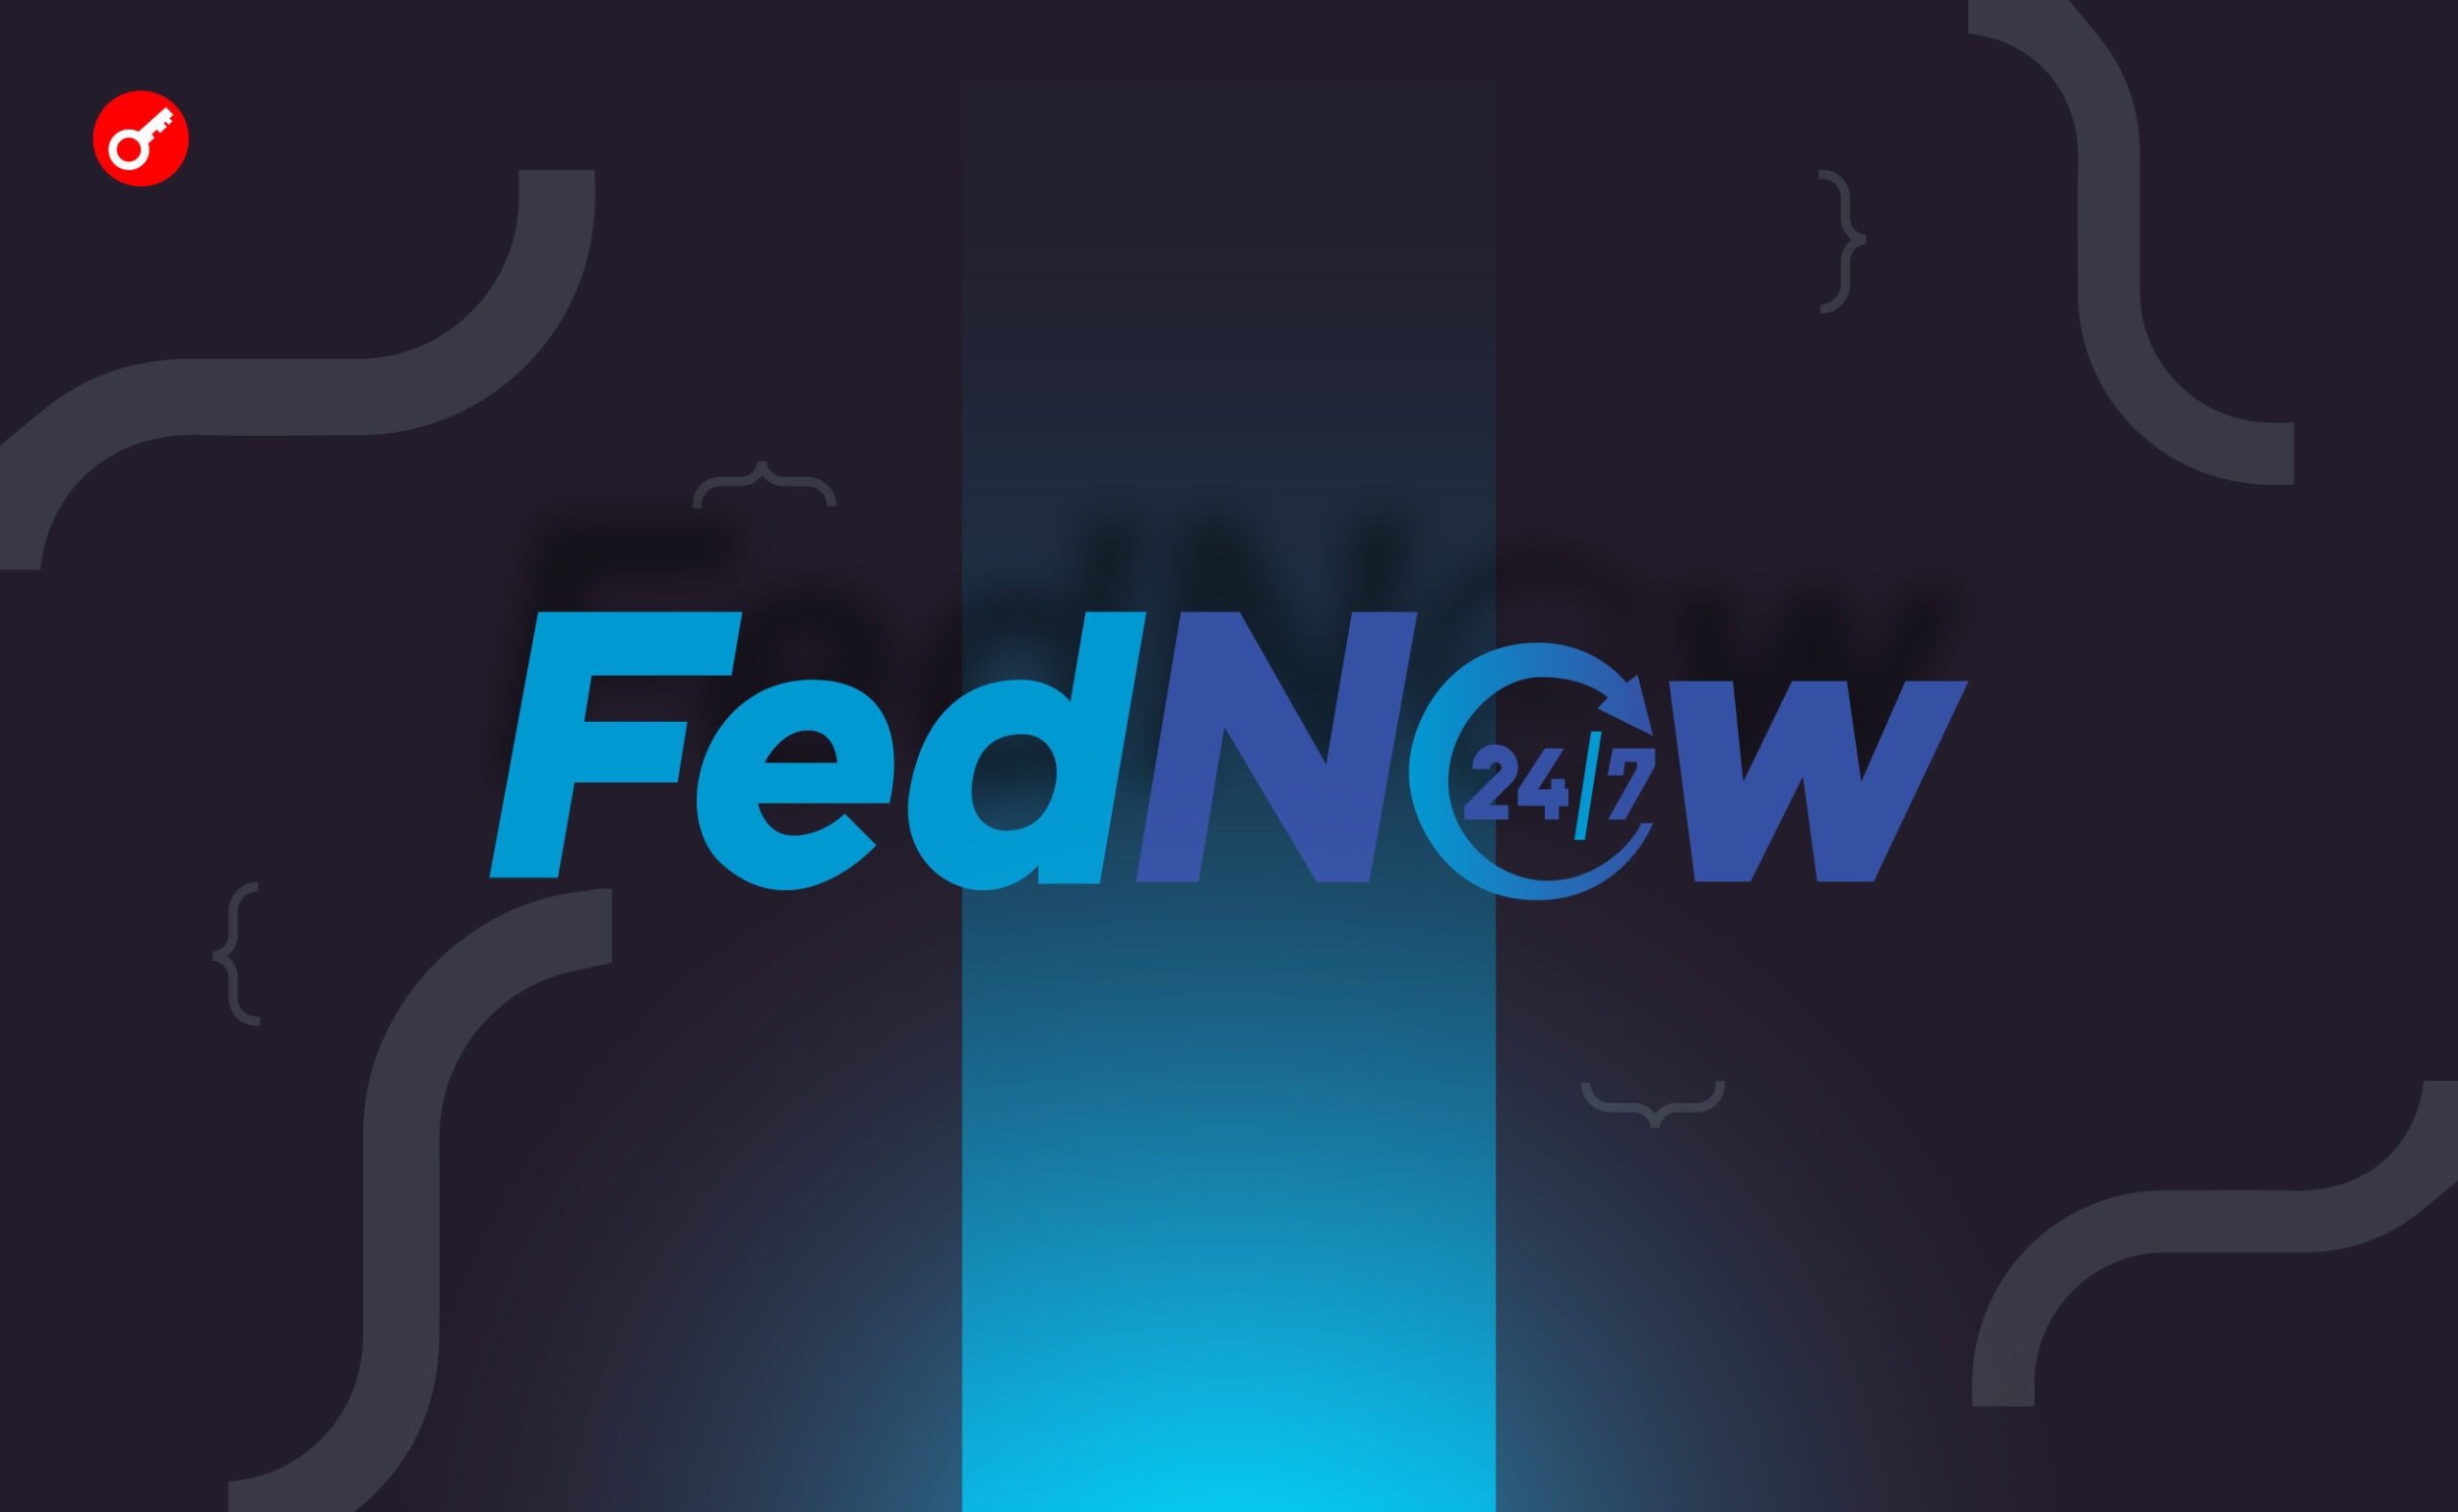 ФРС оголосила про запуск сервісу миттєвих платежів FedNow. Головний колаж новини.